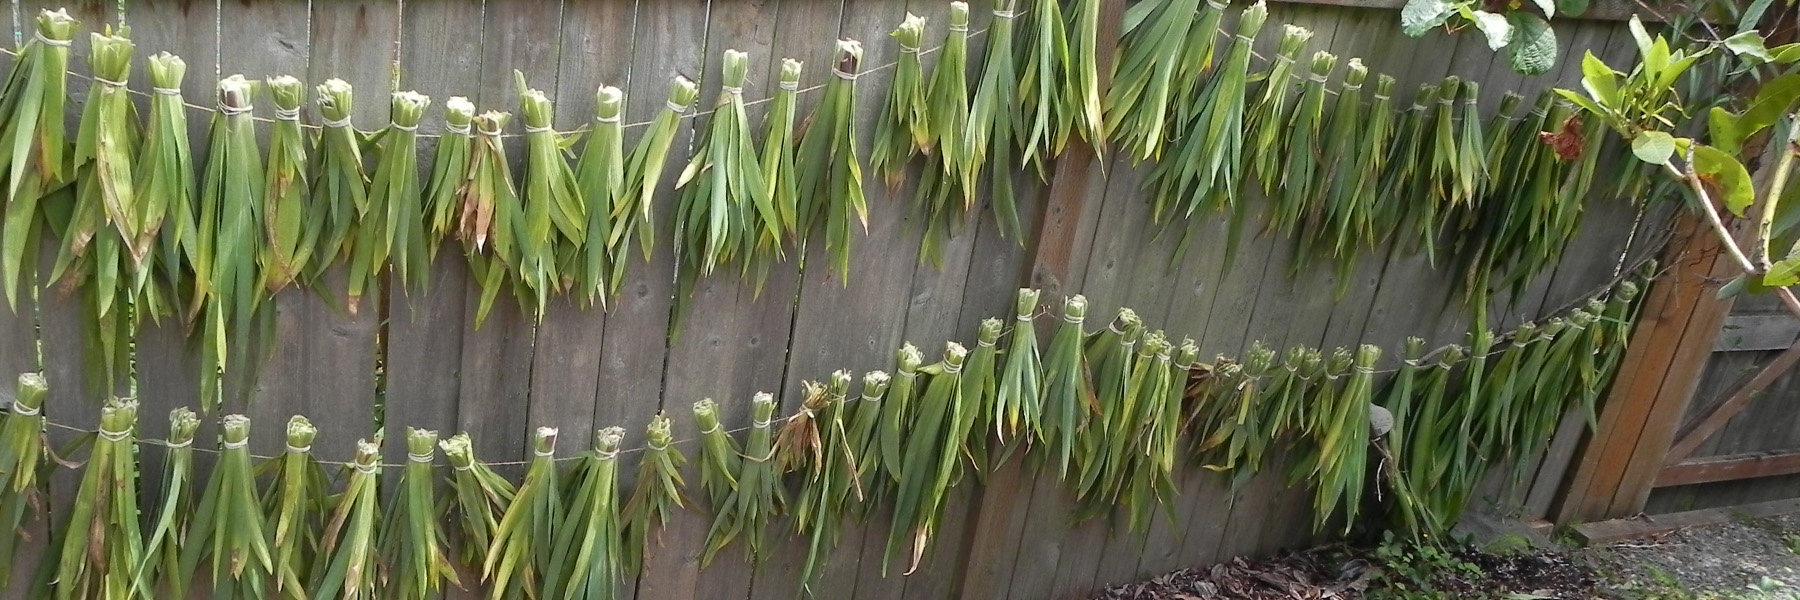 Drying Irises